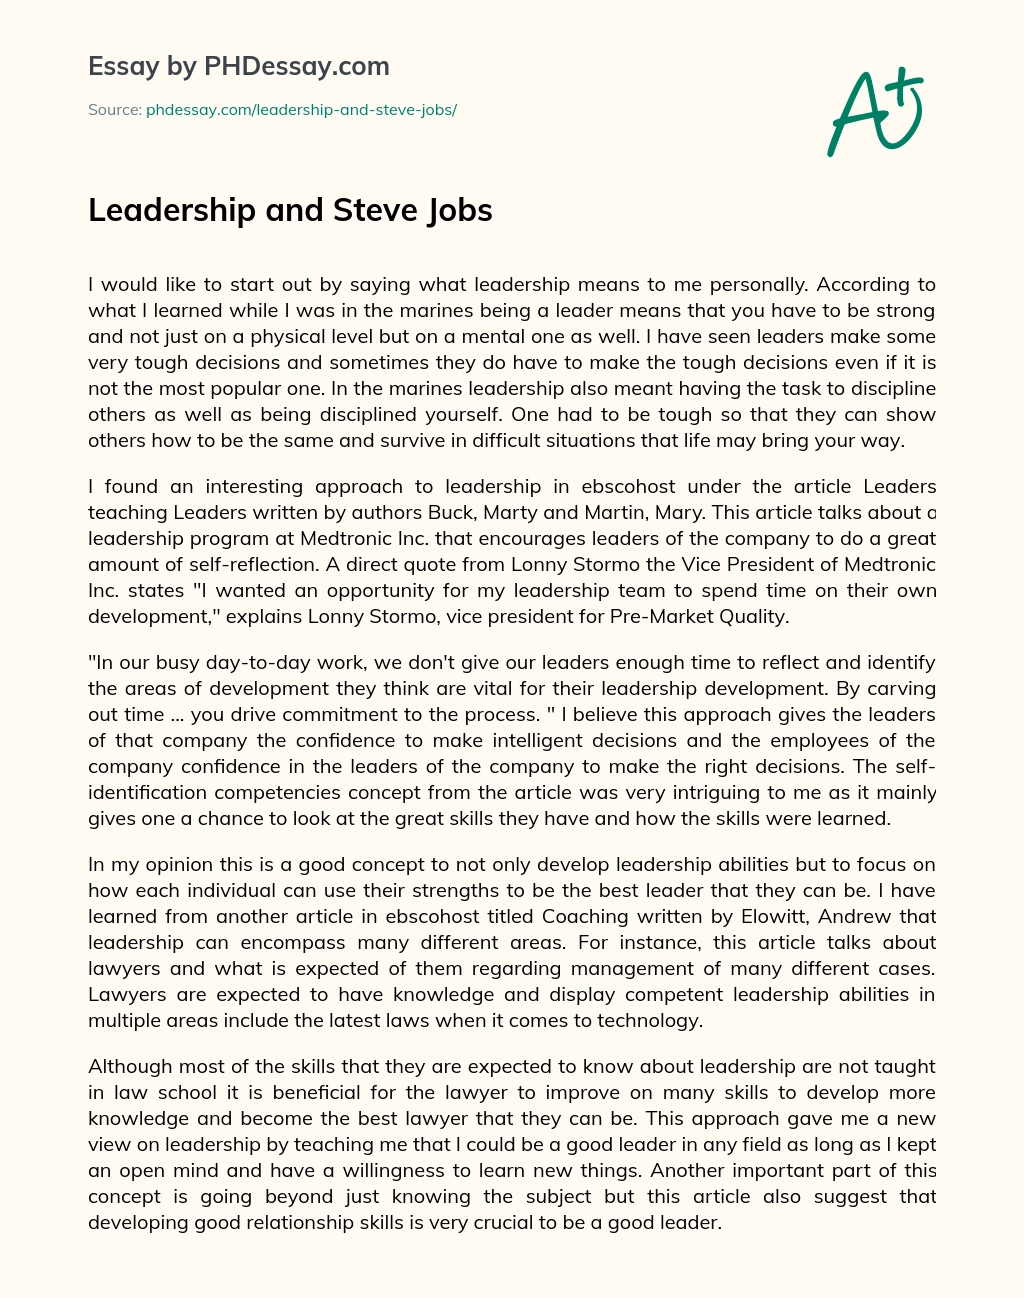 Leadership and Steve Jobs essay